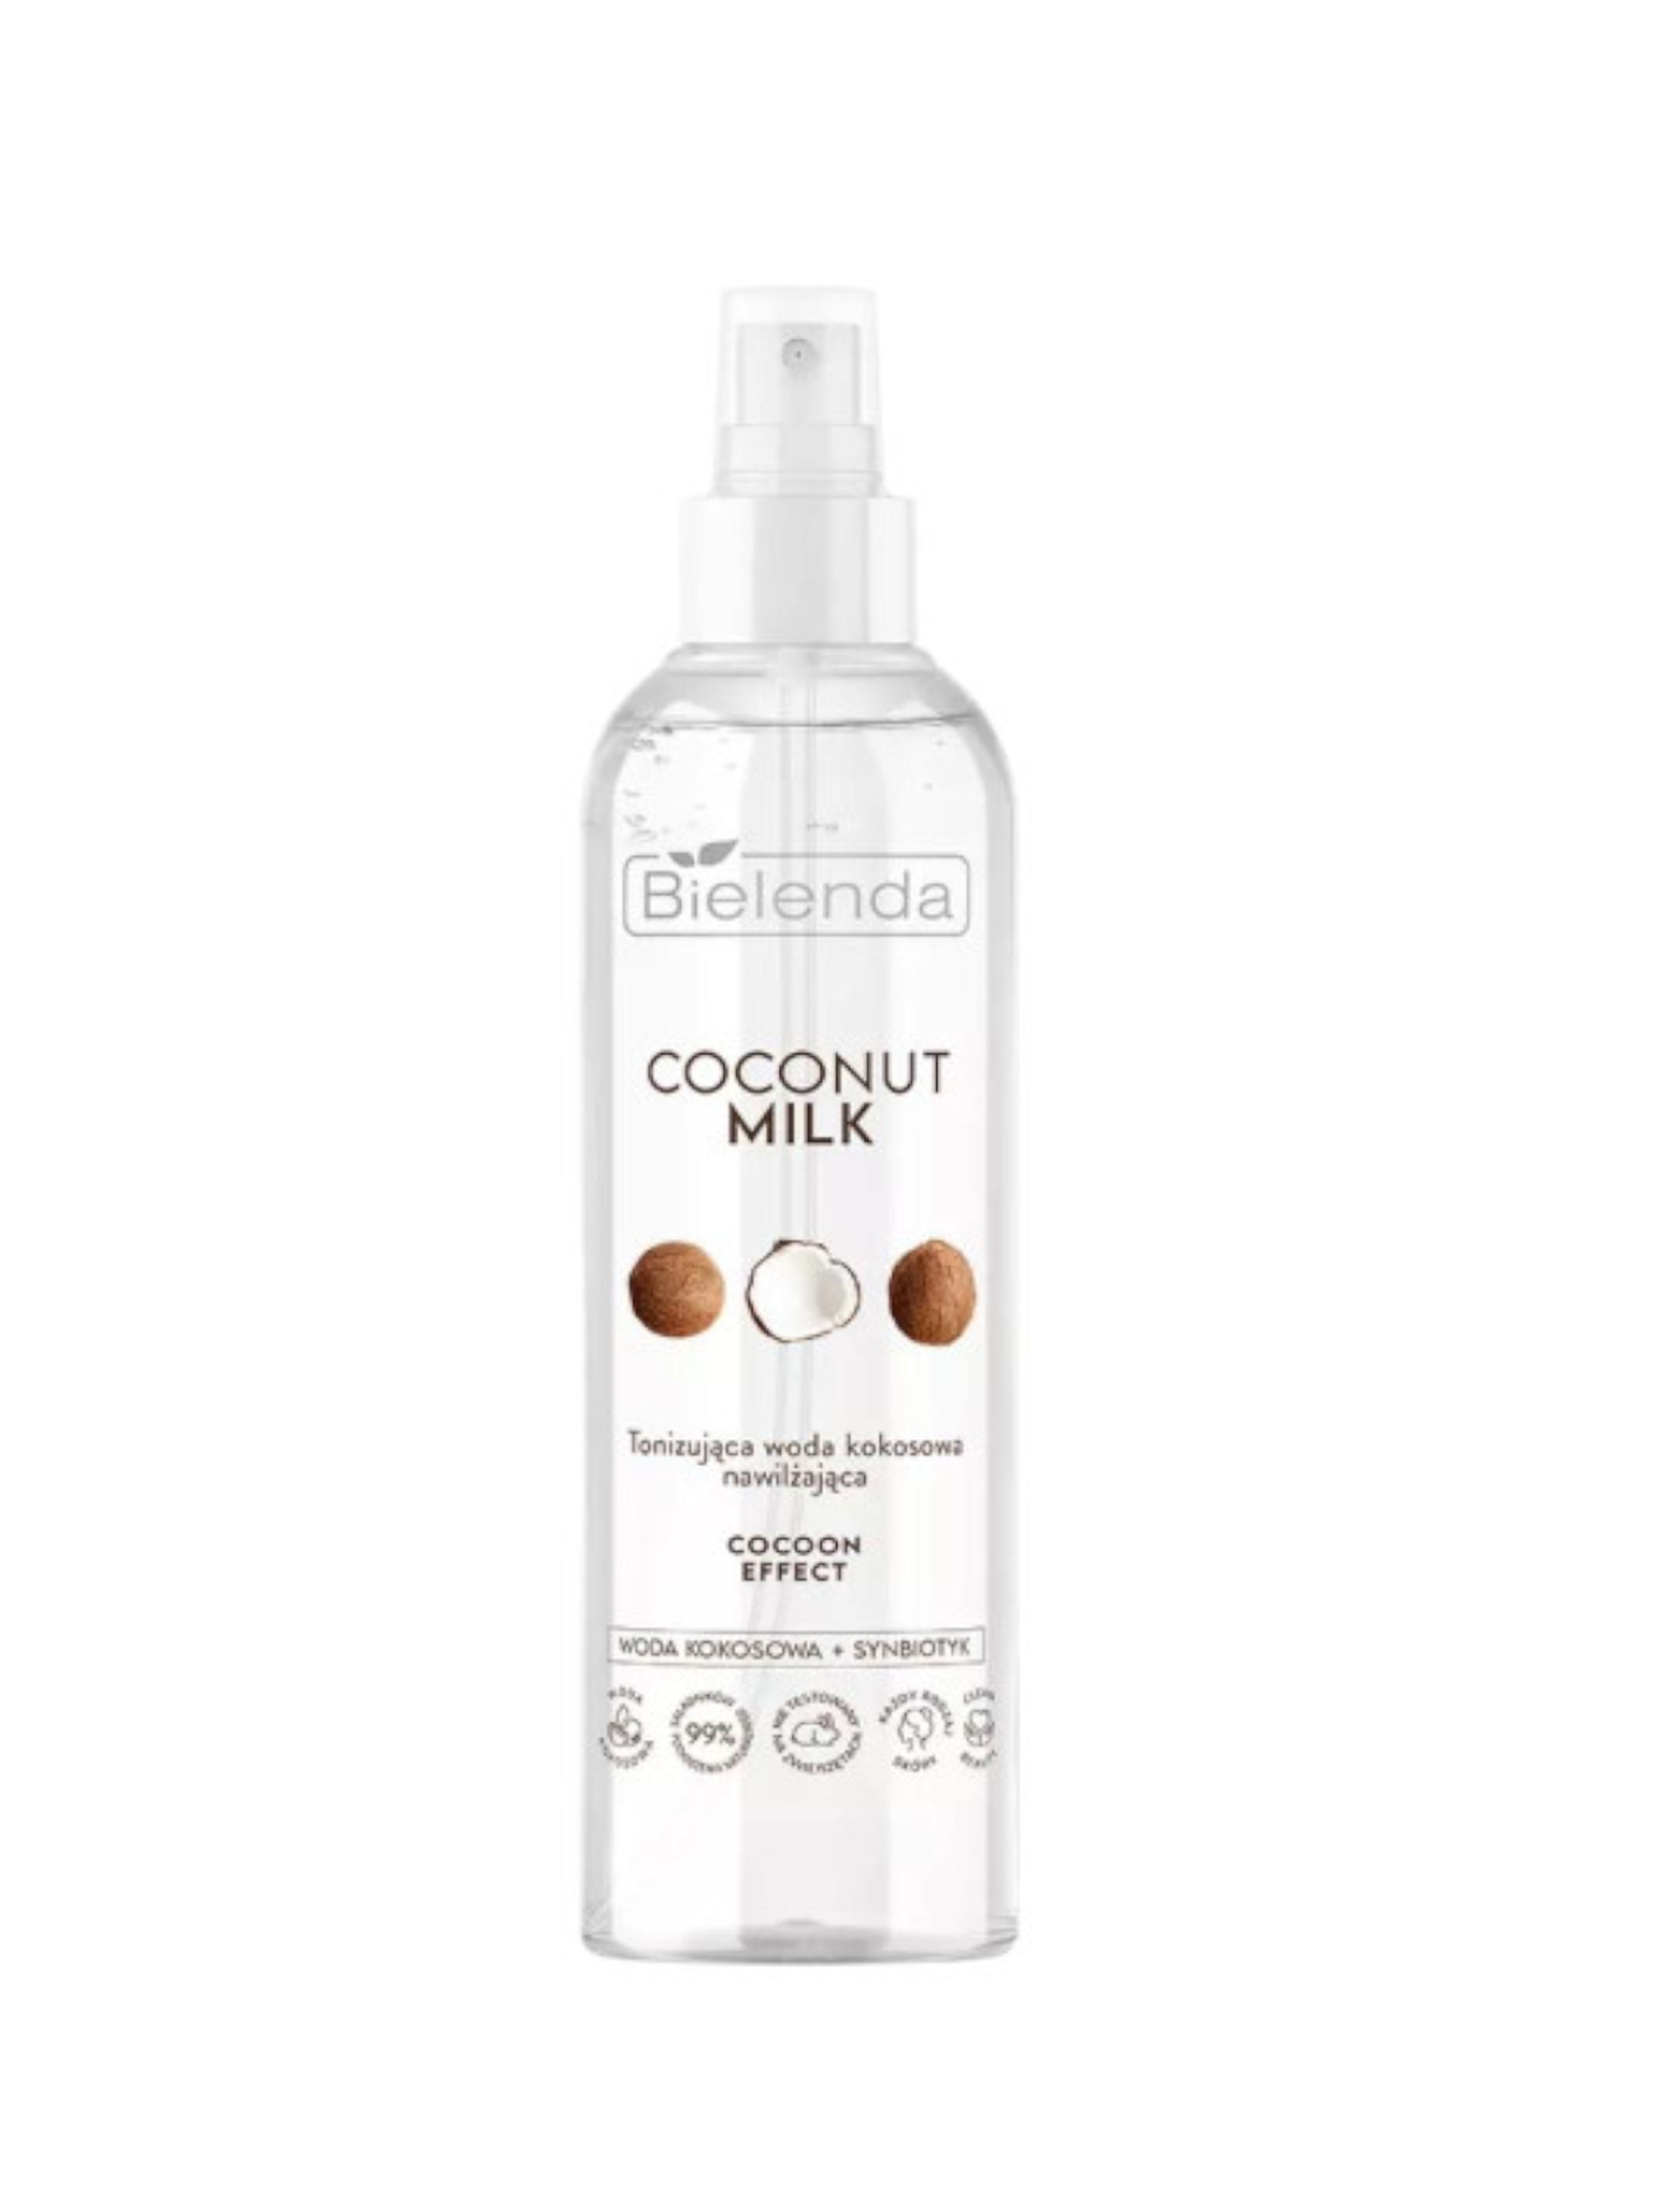 COCONUT MILK Tonizująca woda kokosowa, nawilżająca COCOON EFFECT, 200 ml